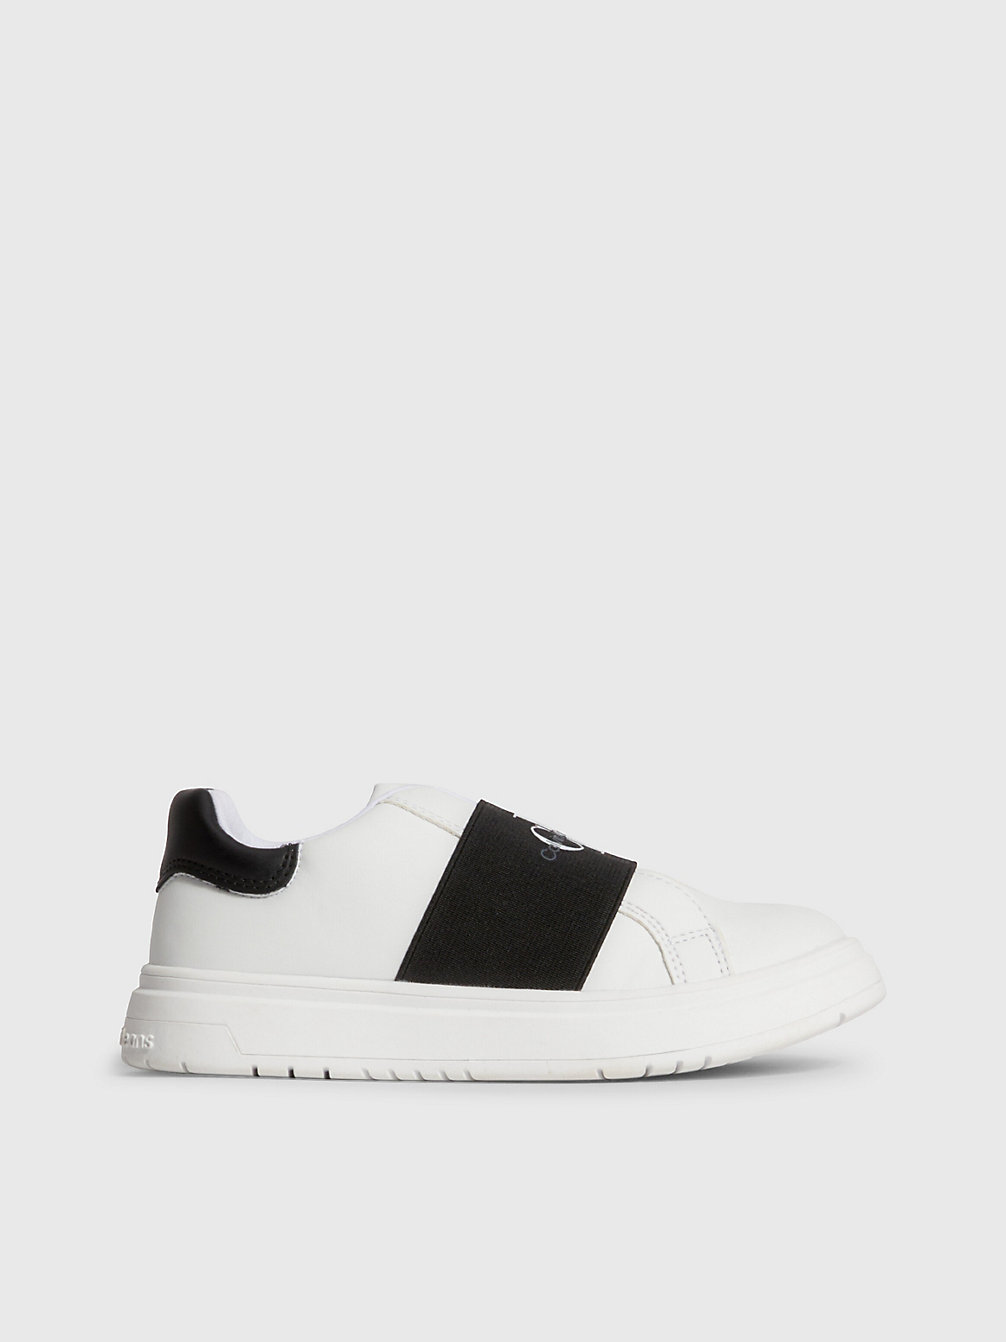 WHITE/BLACK > Recycelte Pull-On-Sneakers Für Kinder > undefined kids unisex - Calvin Klein